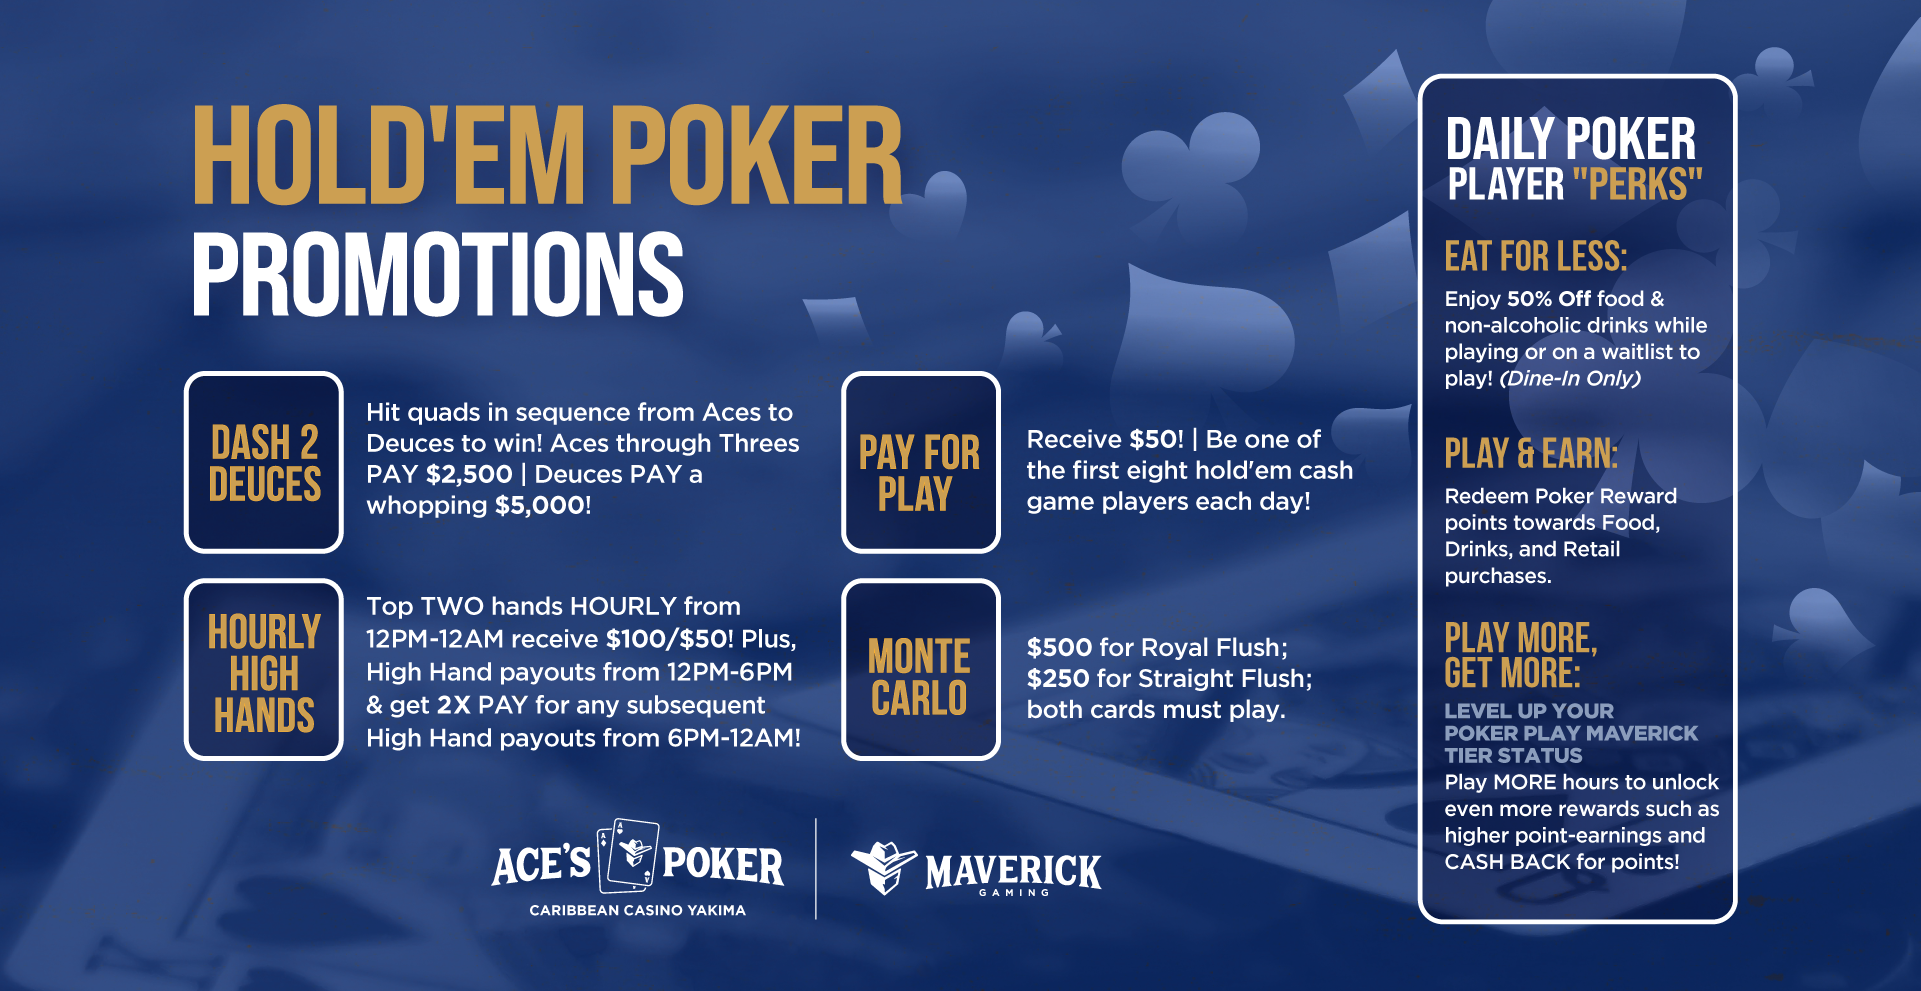 Ace's Poker Yakima Washington | Hold'em Poker Promotions